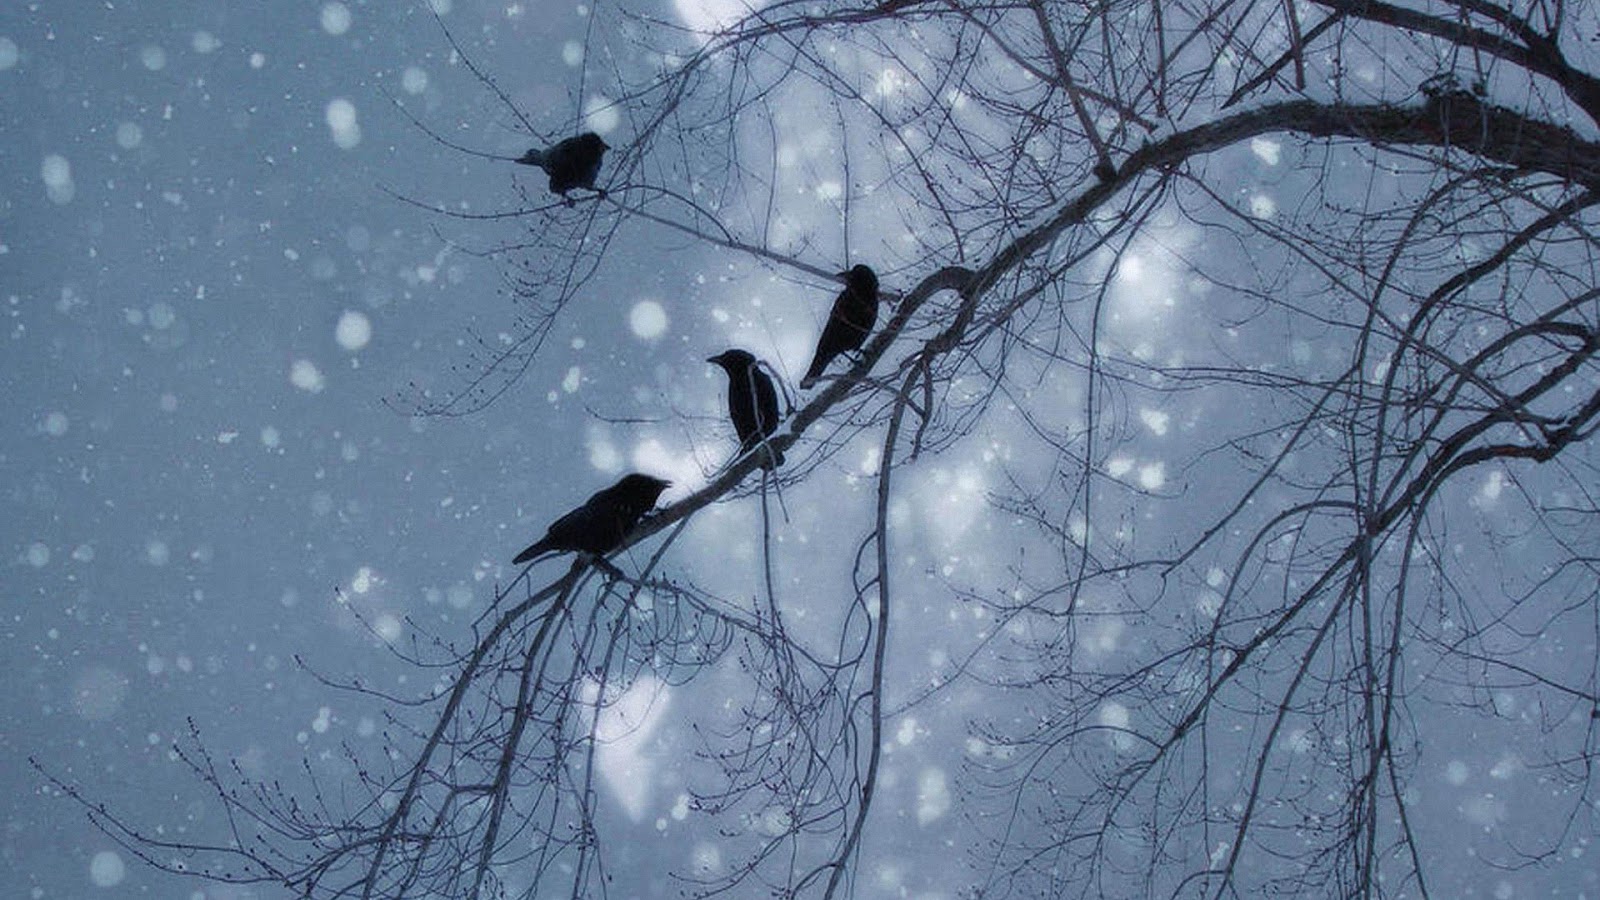 Птицы летающие зимой. Птицы на дереве зимой. Ворона на ветке зимой. Птицы в небе зимой. Ветки в снегу.